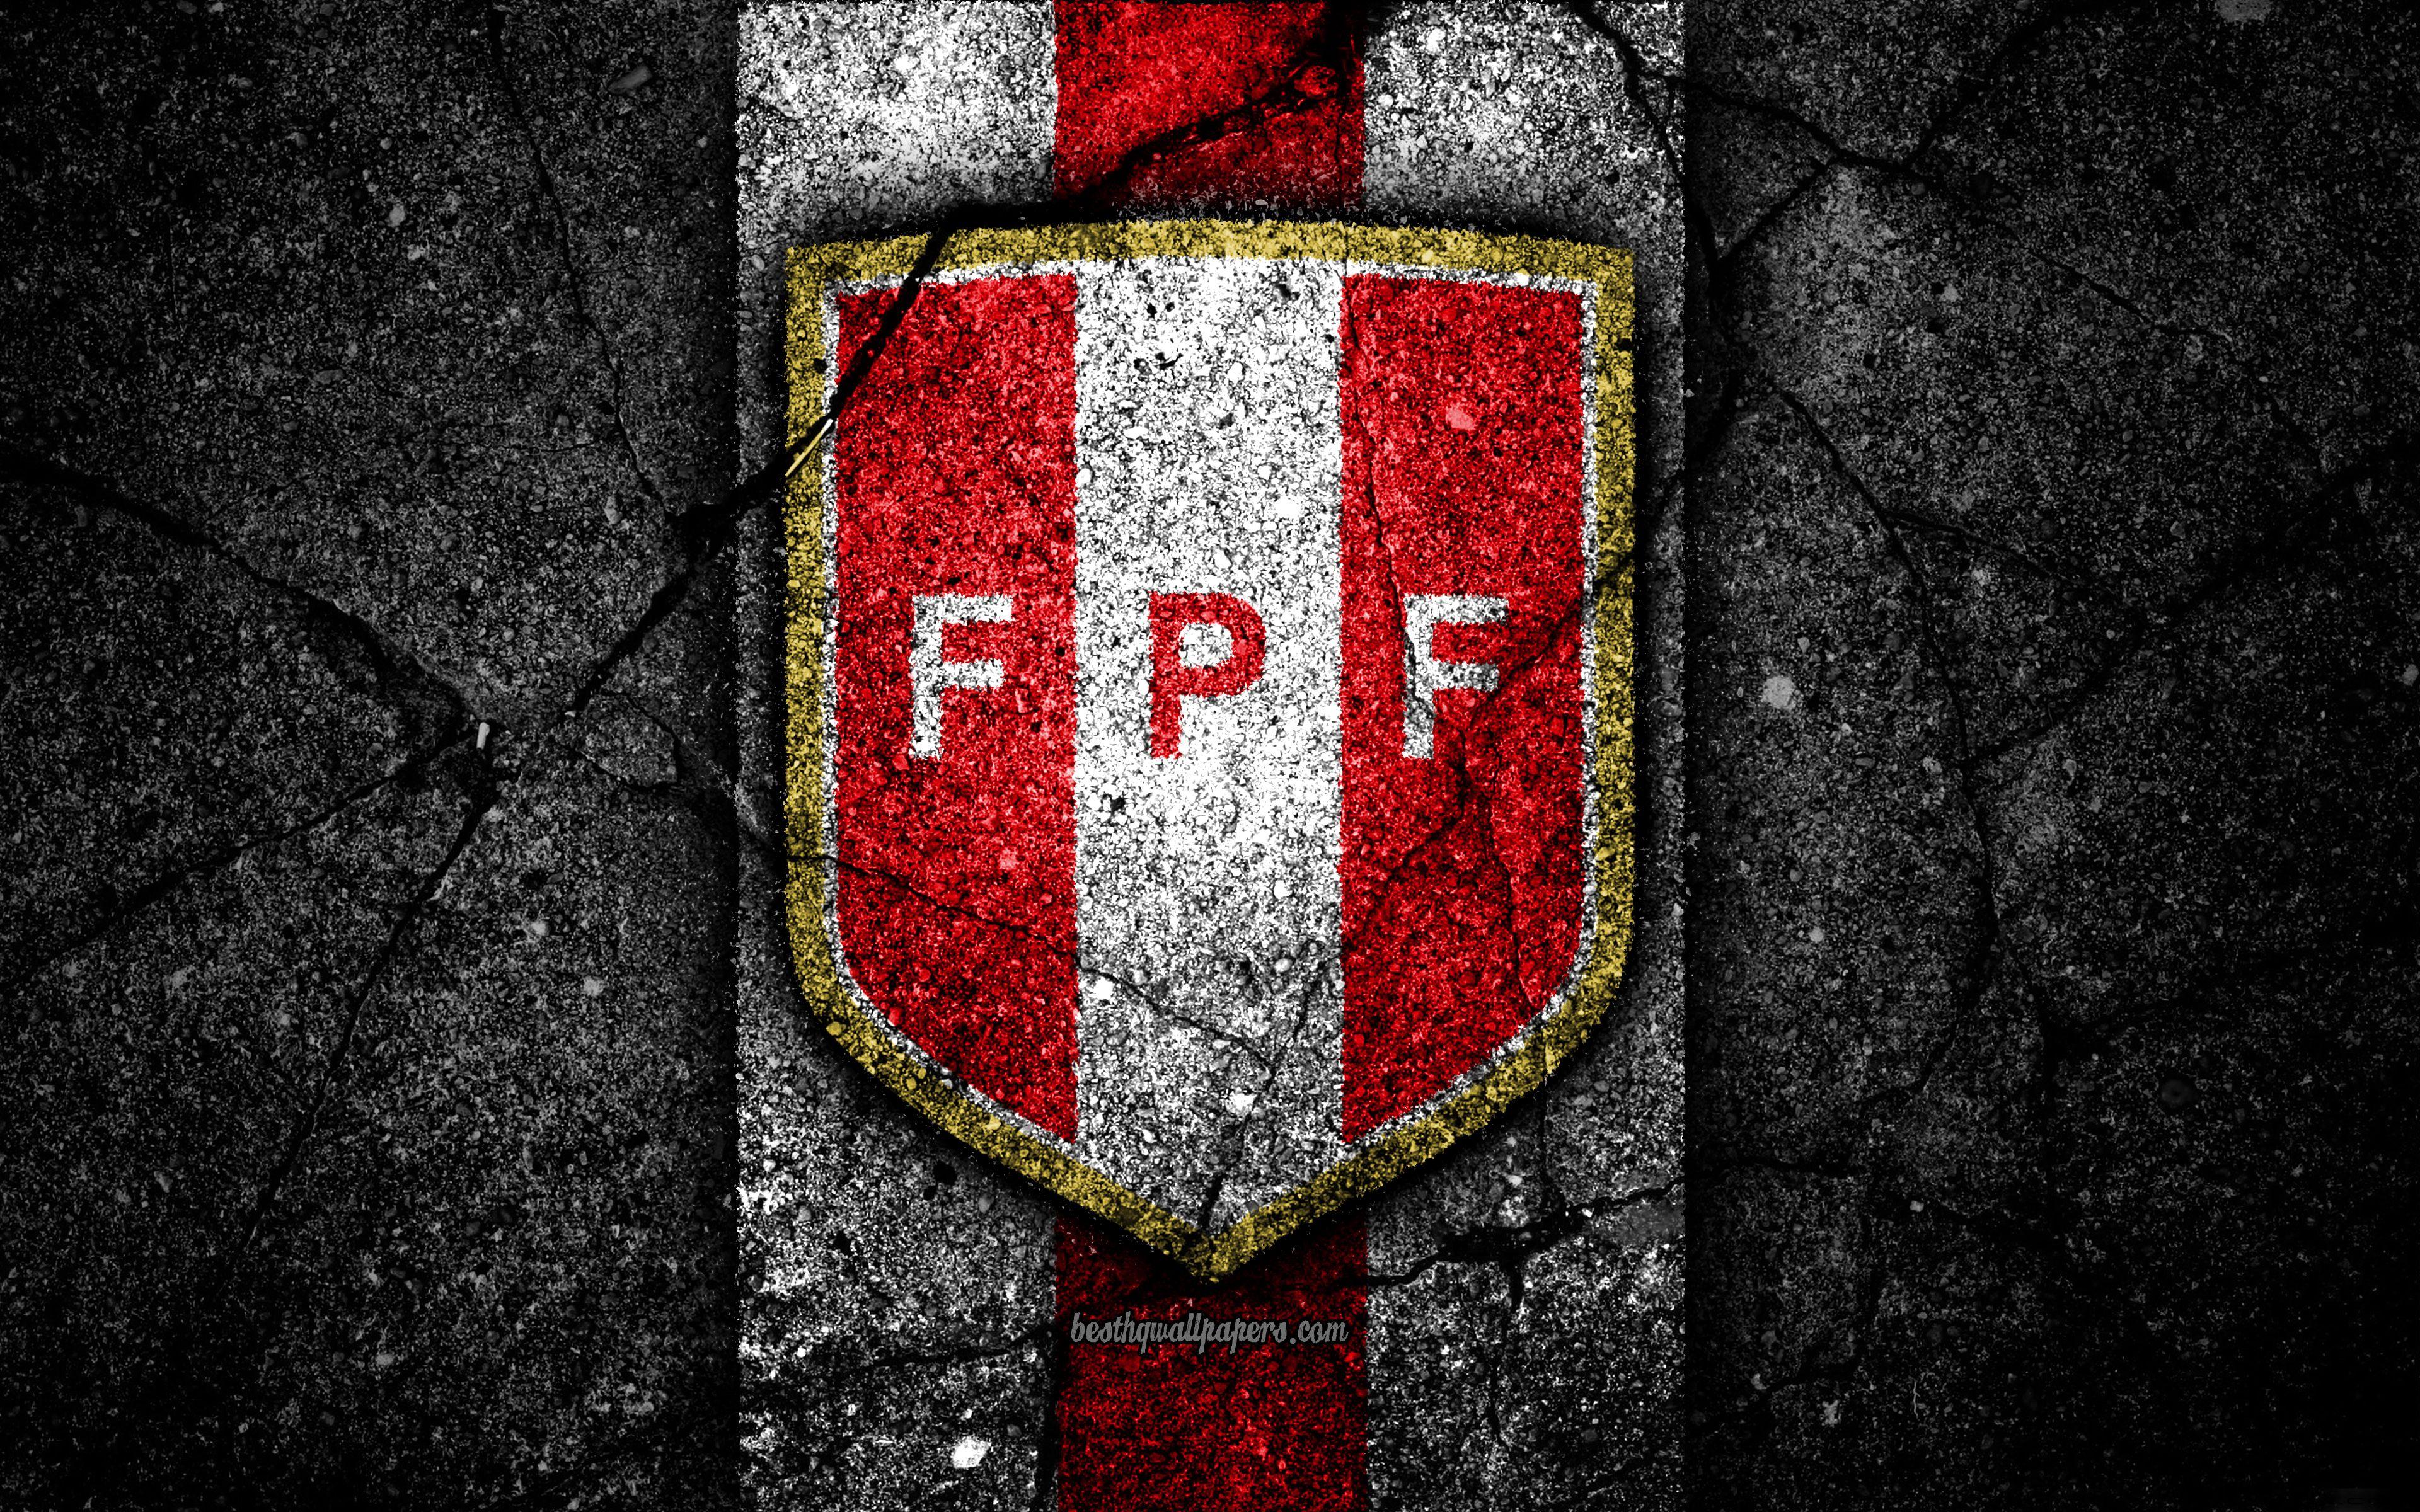 Download wallpaper Peruvian football team, 4k, emblem, grunge